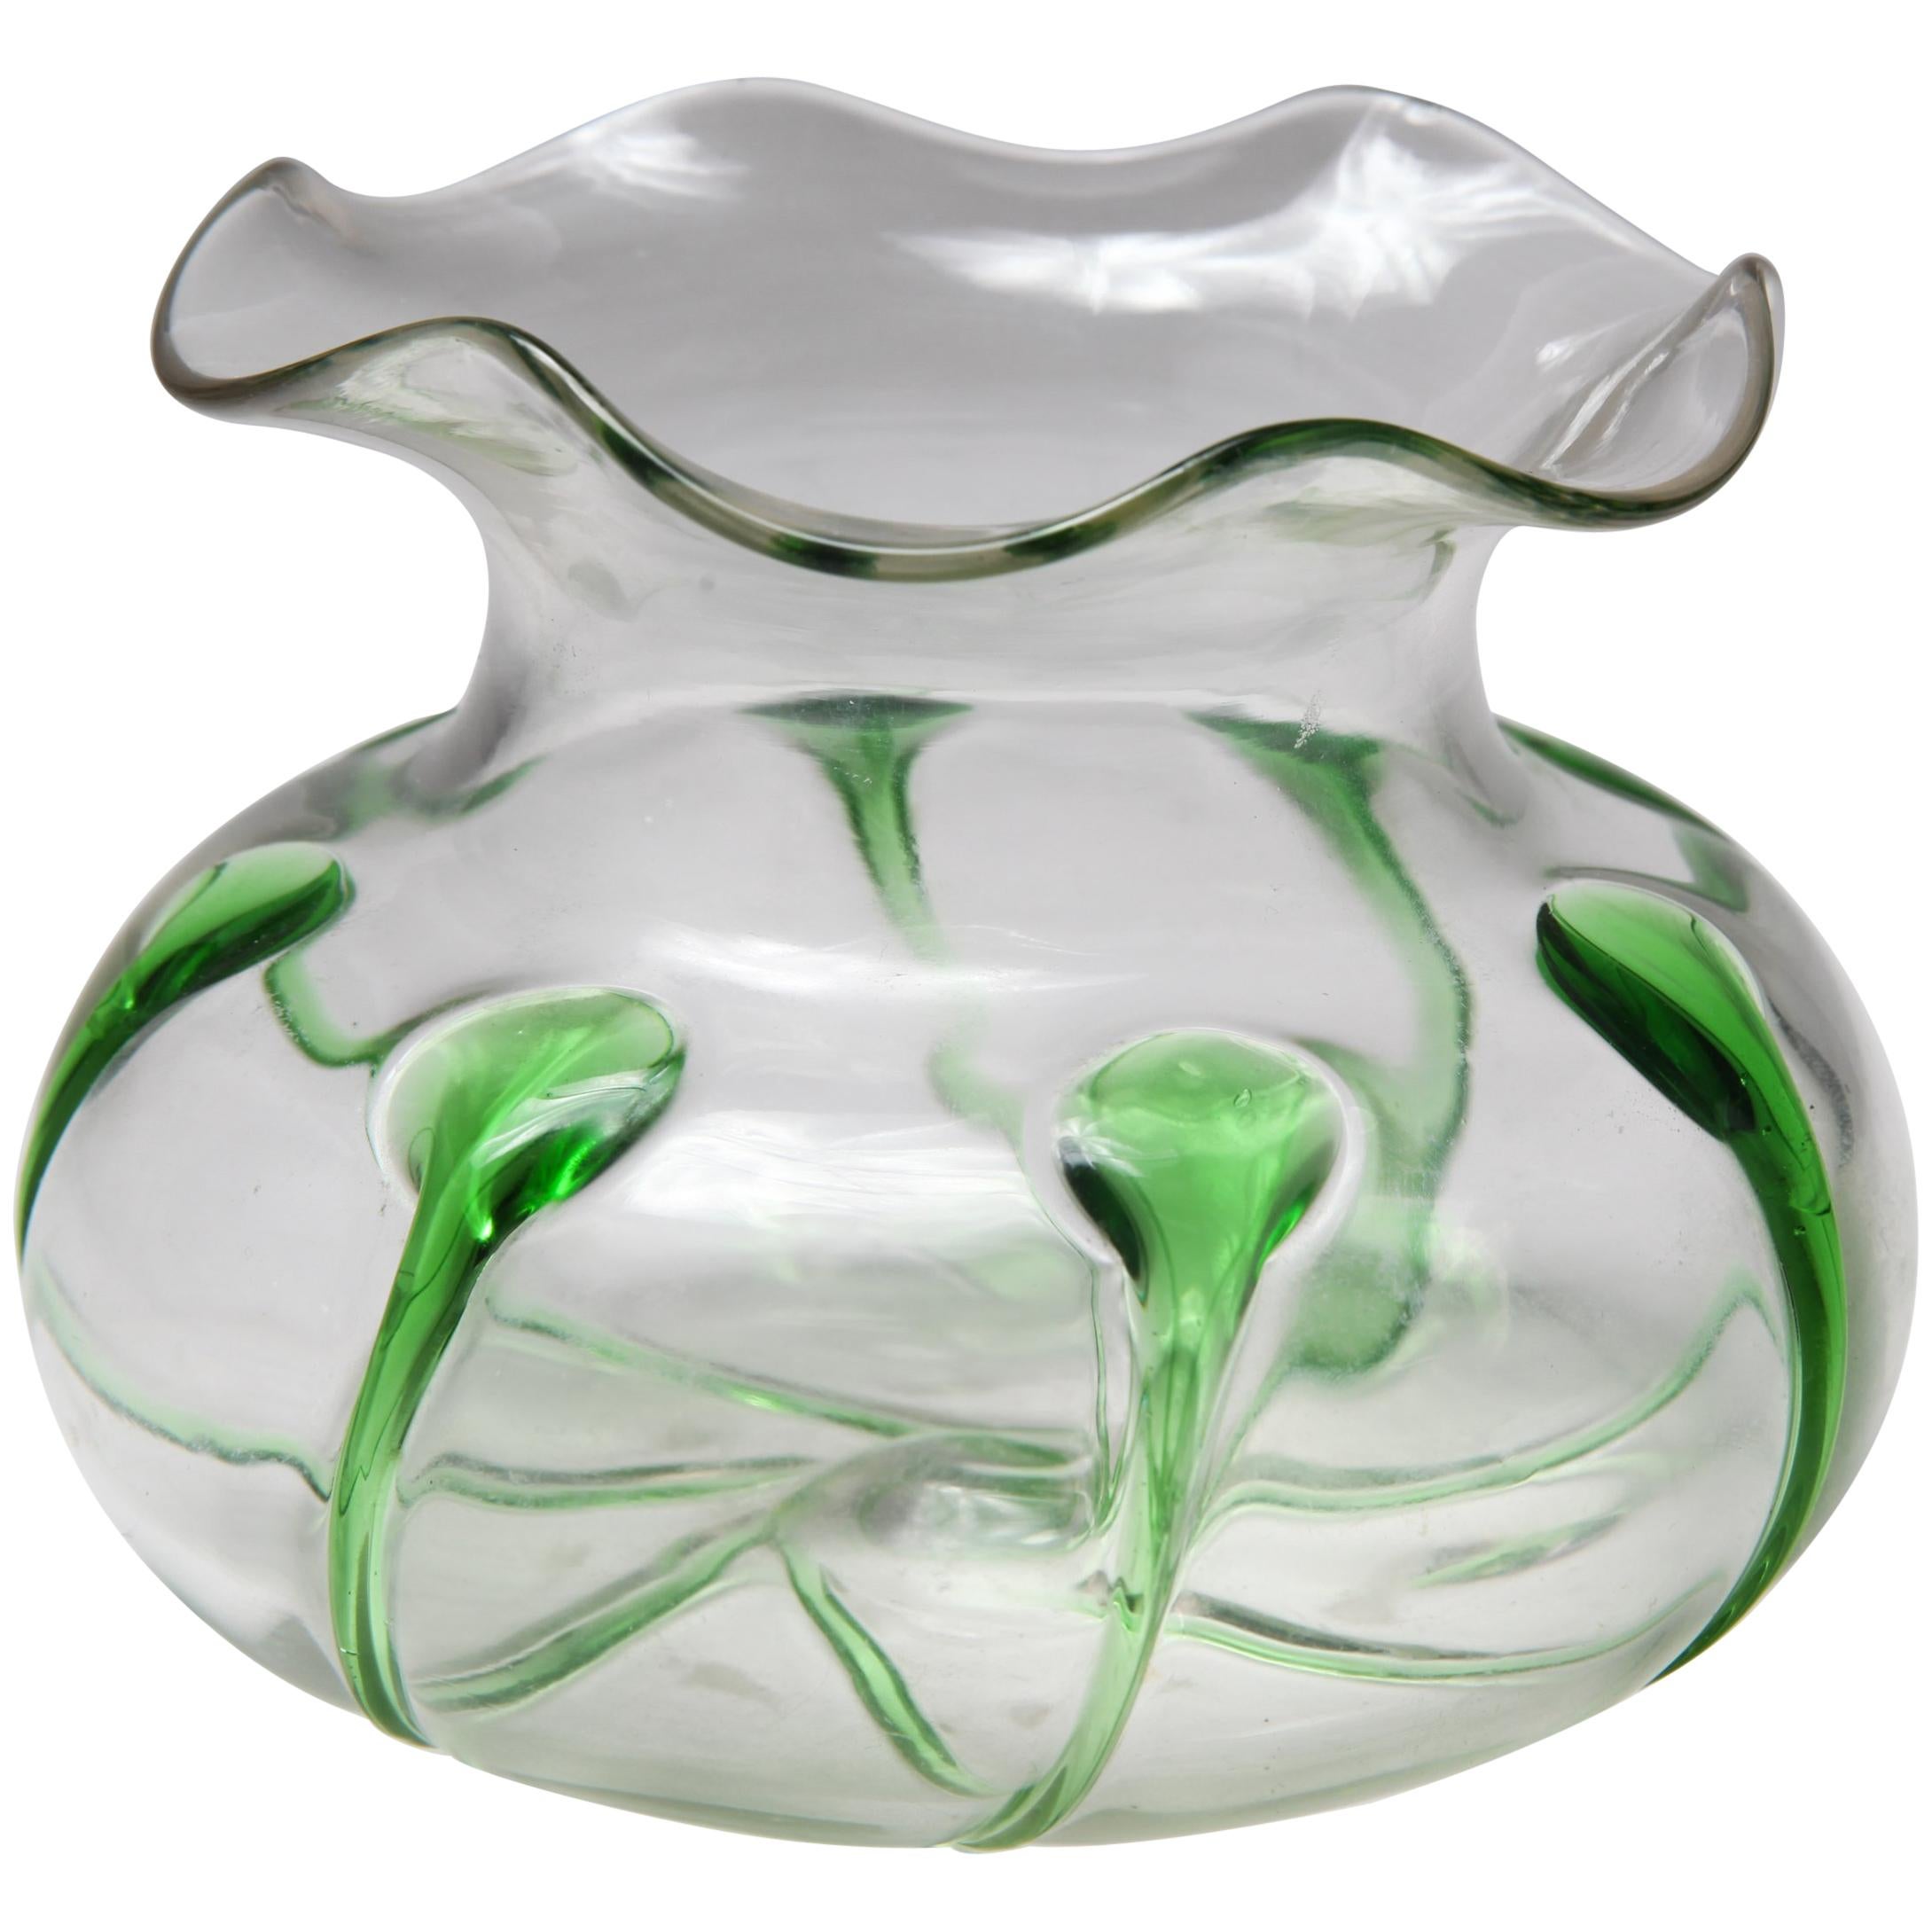 Cuenco de cristal estilo Art Nouveau con detalles verdes